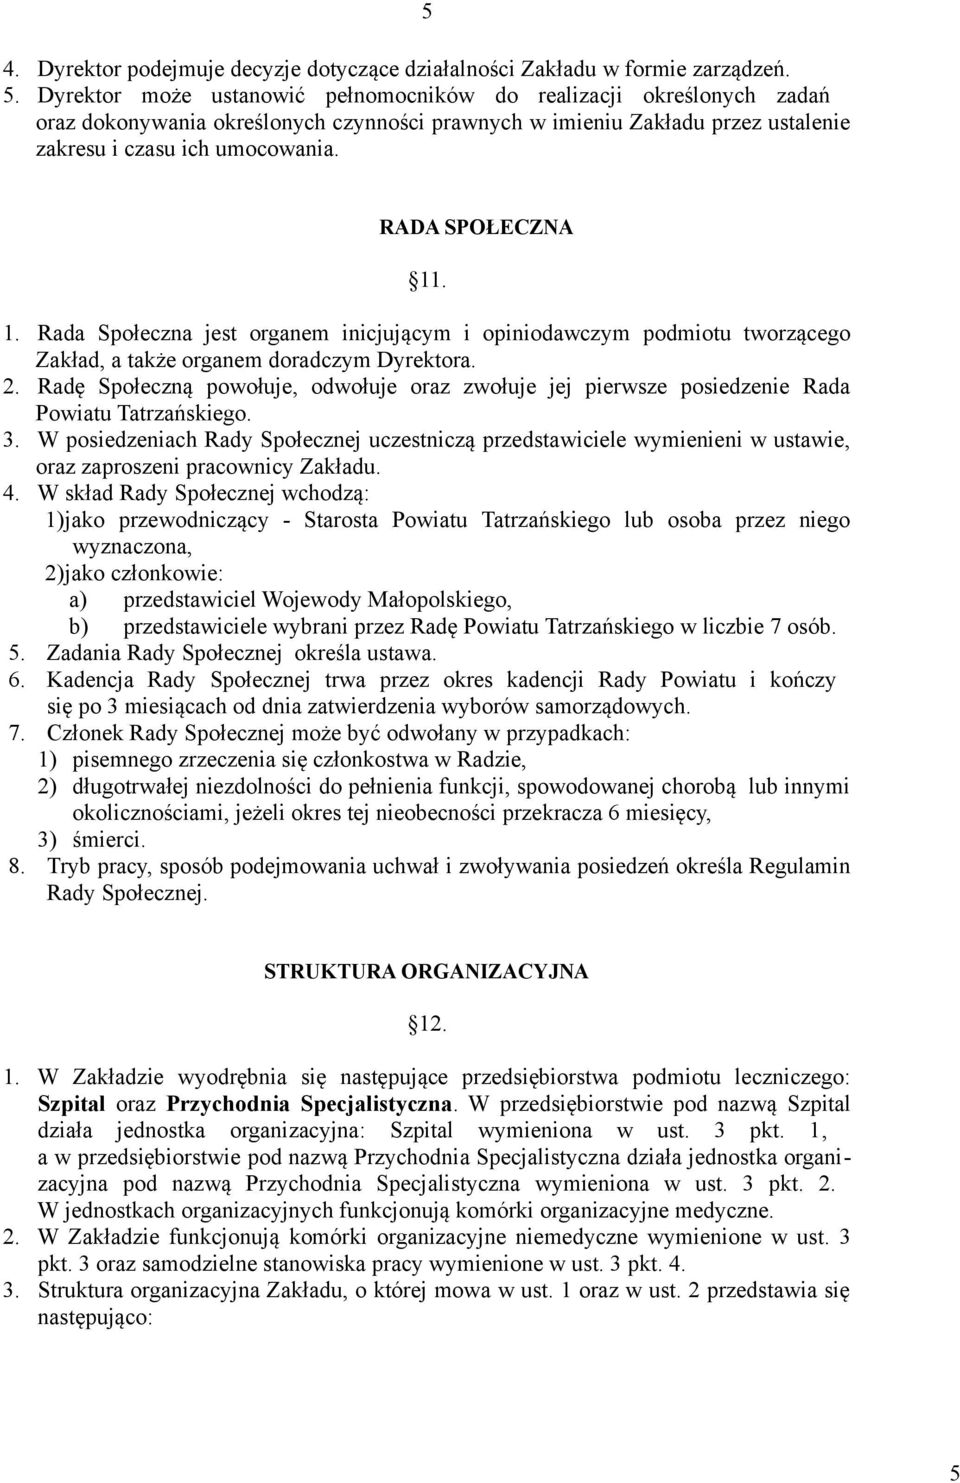 Radę Społeczną powołuje, odwołuje oraz zwołuje jej pierwsze posiedzenie Rada Powiatu Tatrzańskiego. 3.